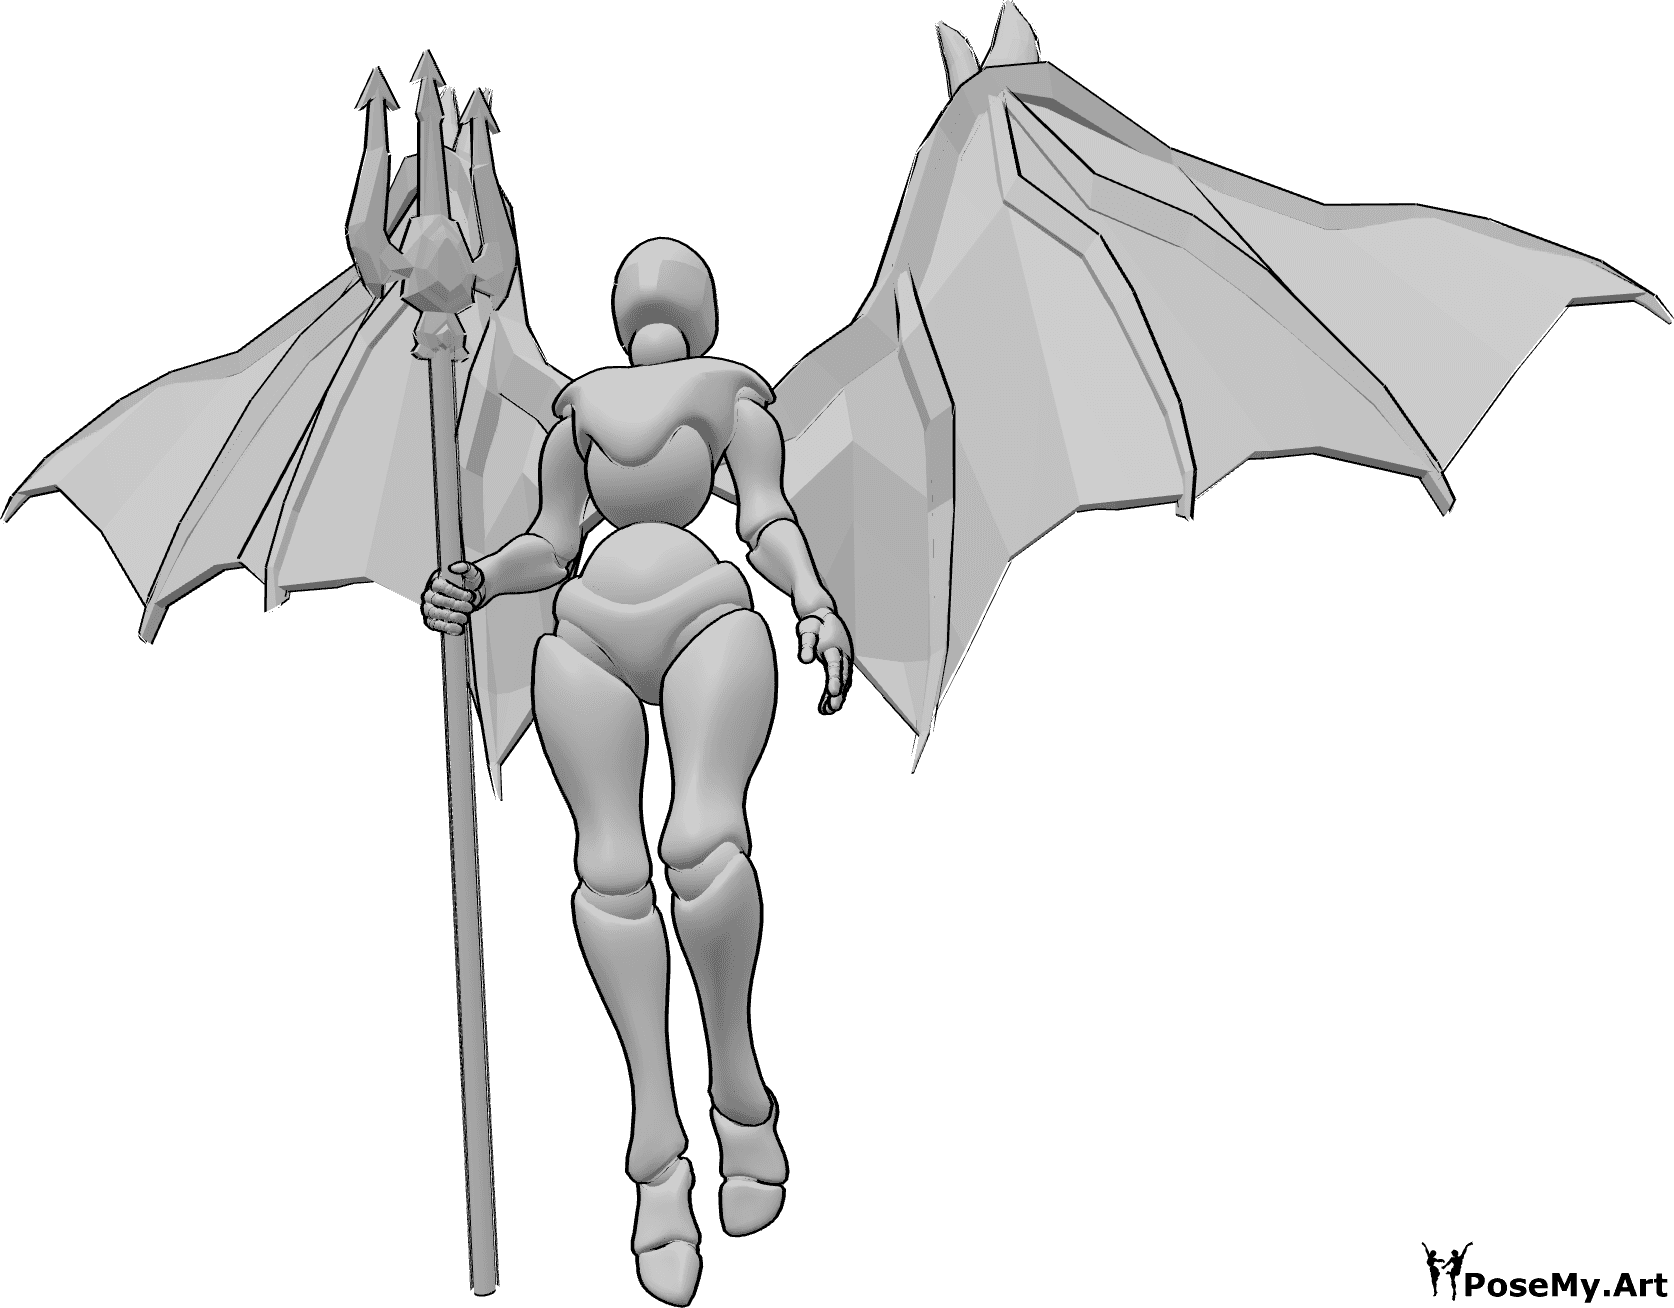 Referencia de poses- Postura de demonio volador - Mujer con alas de diablo está volando hacia arriba, sosteniendo el tridente en su mano derecha y mirando hacia arriba